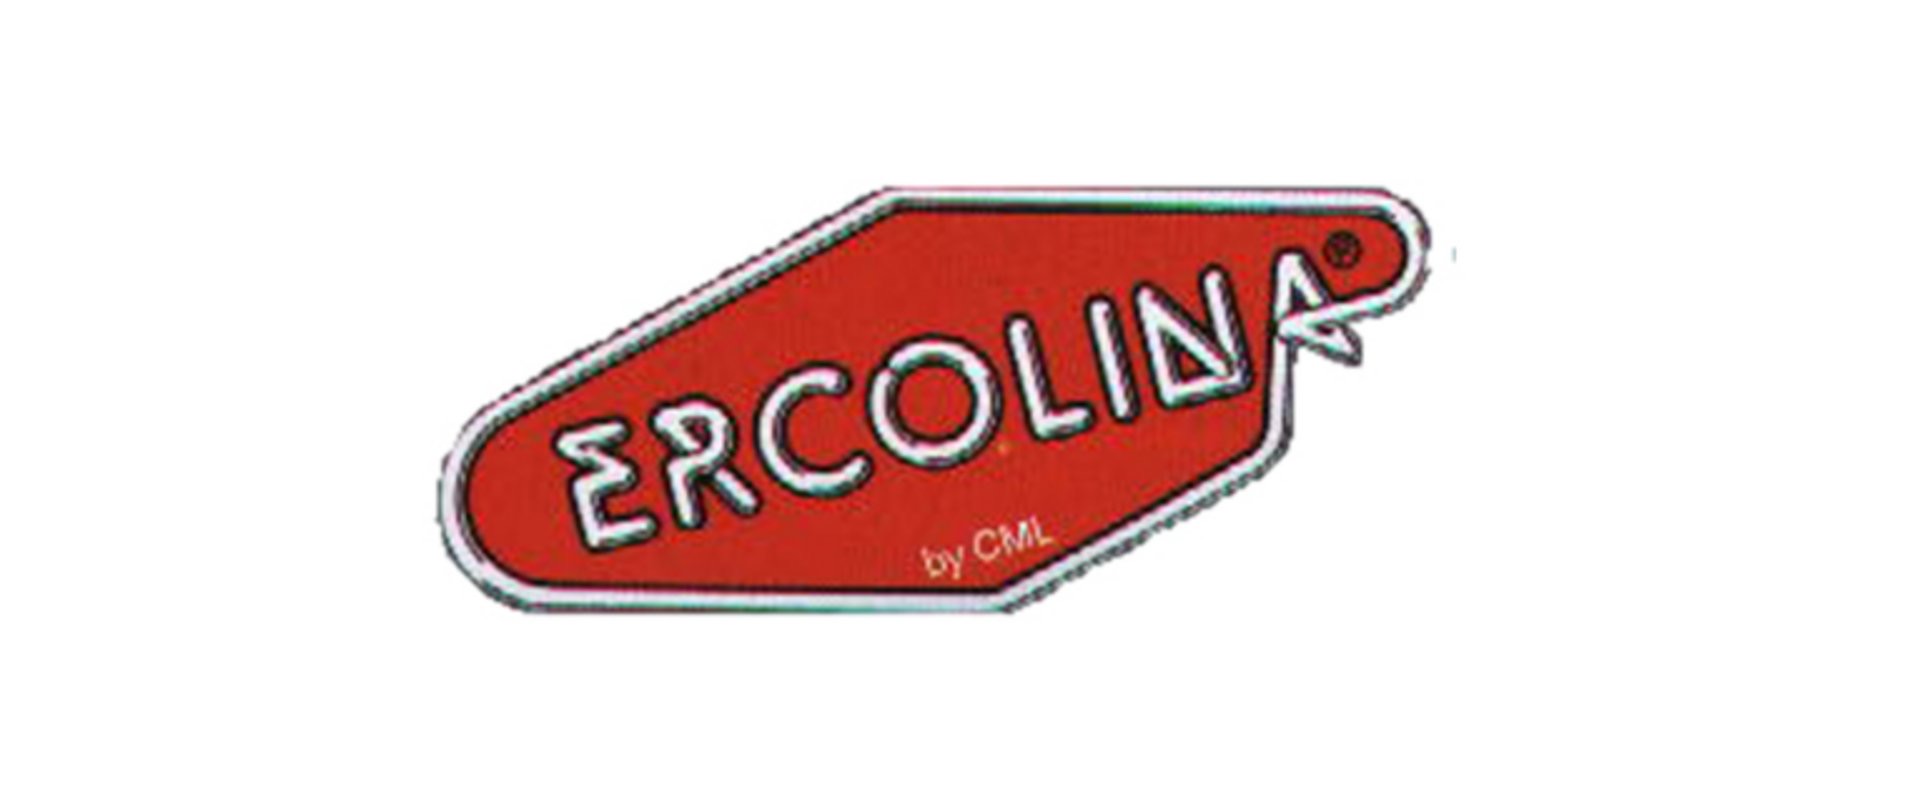 Ercolina logo